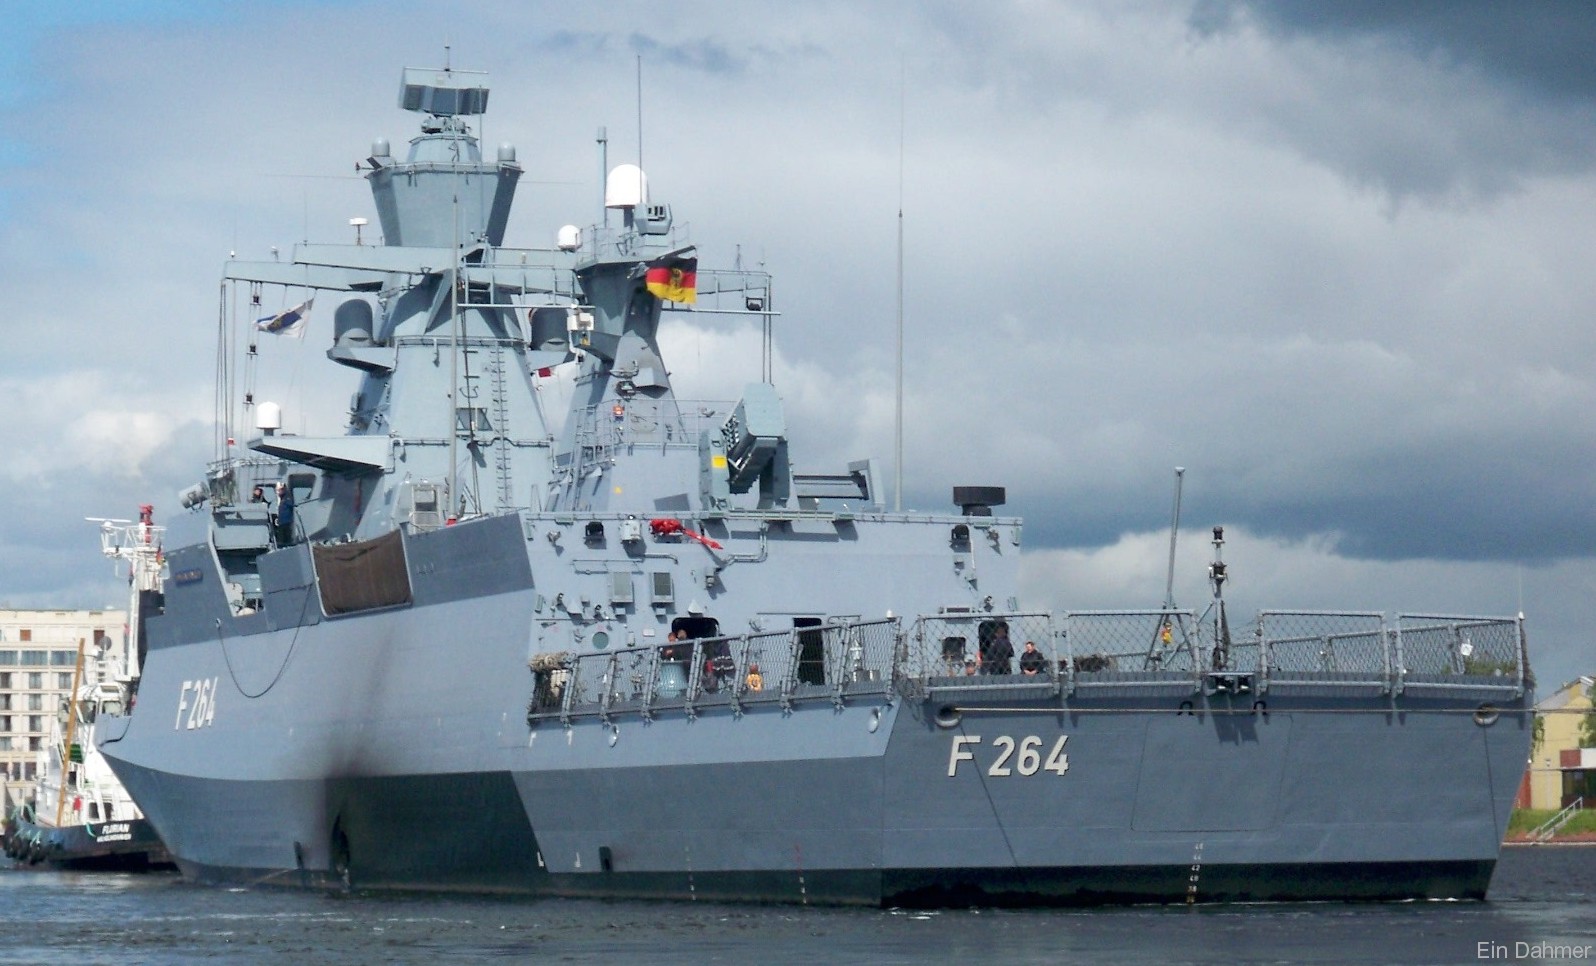 f-264 fgs ludwigshafen am rhein type k130 braunschweig class corvette german navy 09